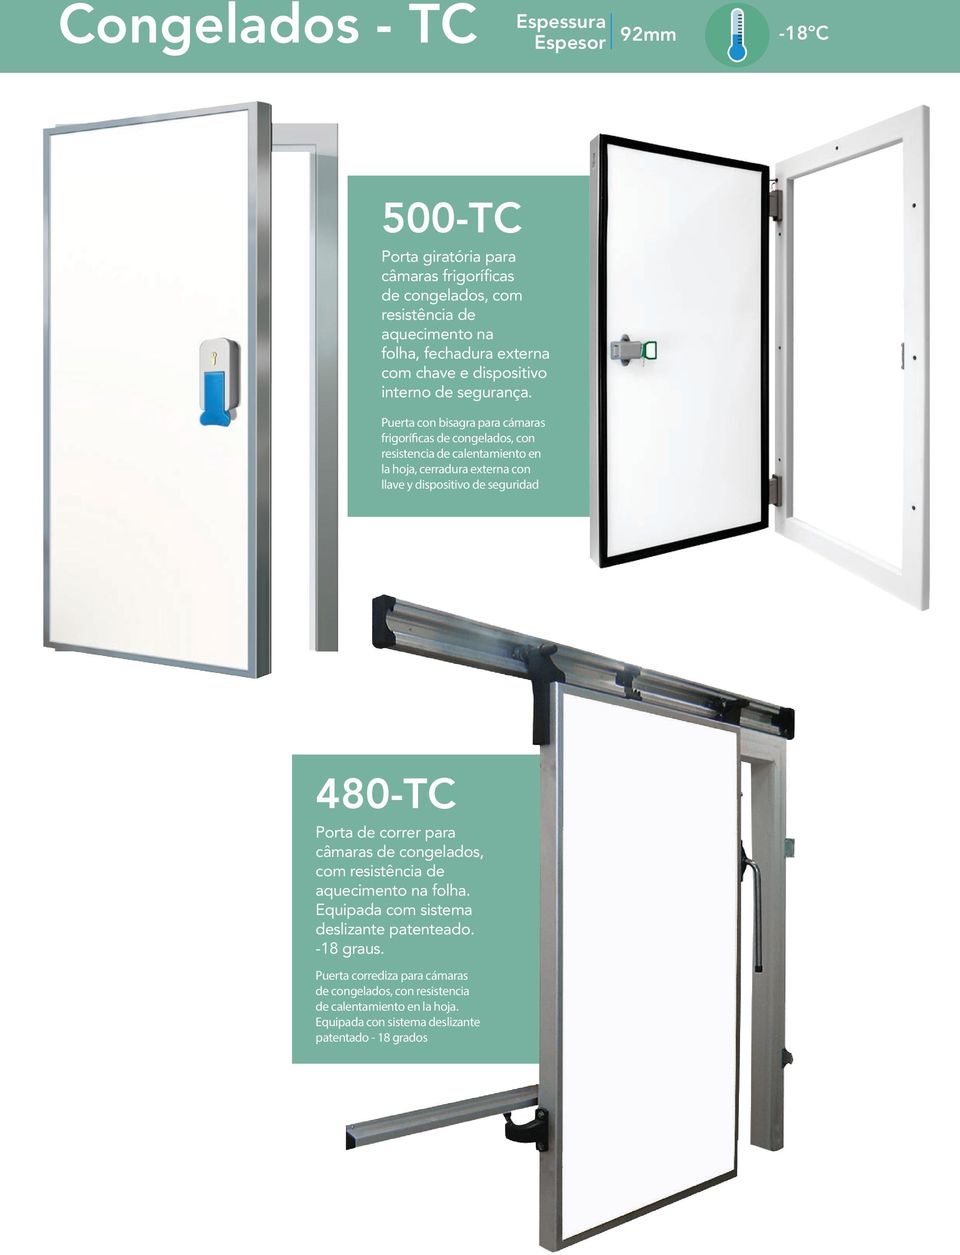 Puerta con bisagra para cámaras frigoríficas de congelados, con resistencia de calentamiento en la hoja, cerradura externa con llave y dispositivo de seguridad